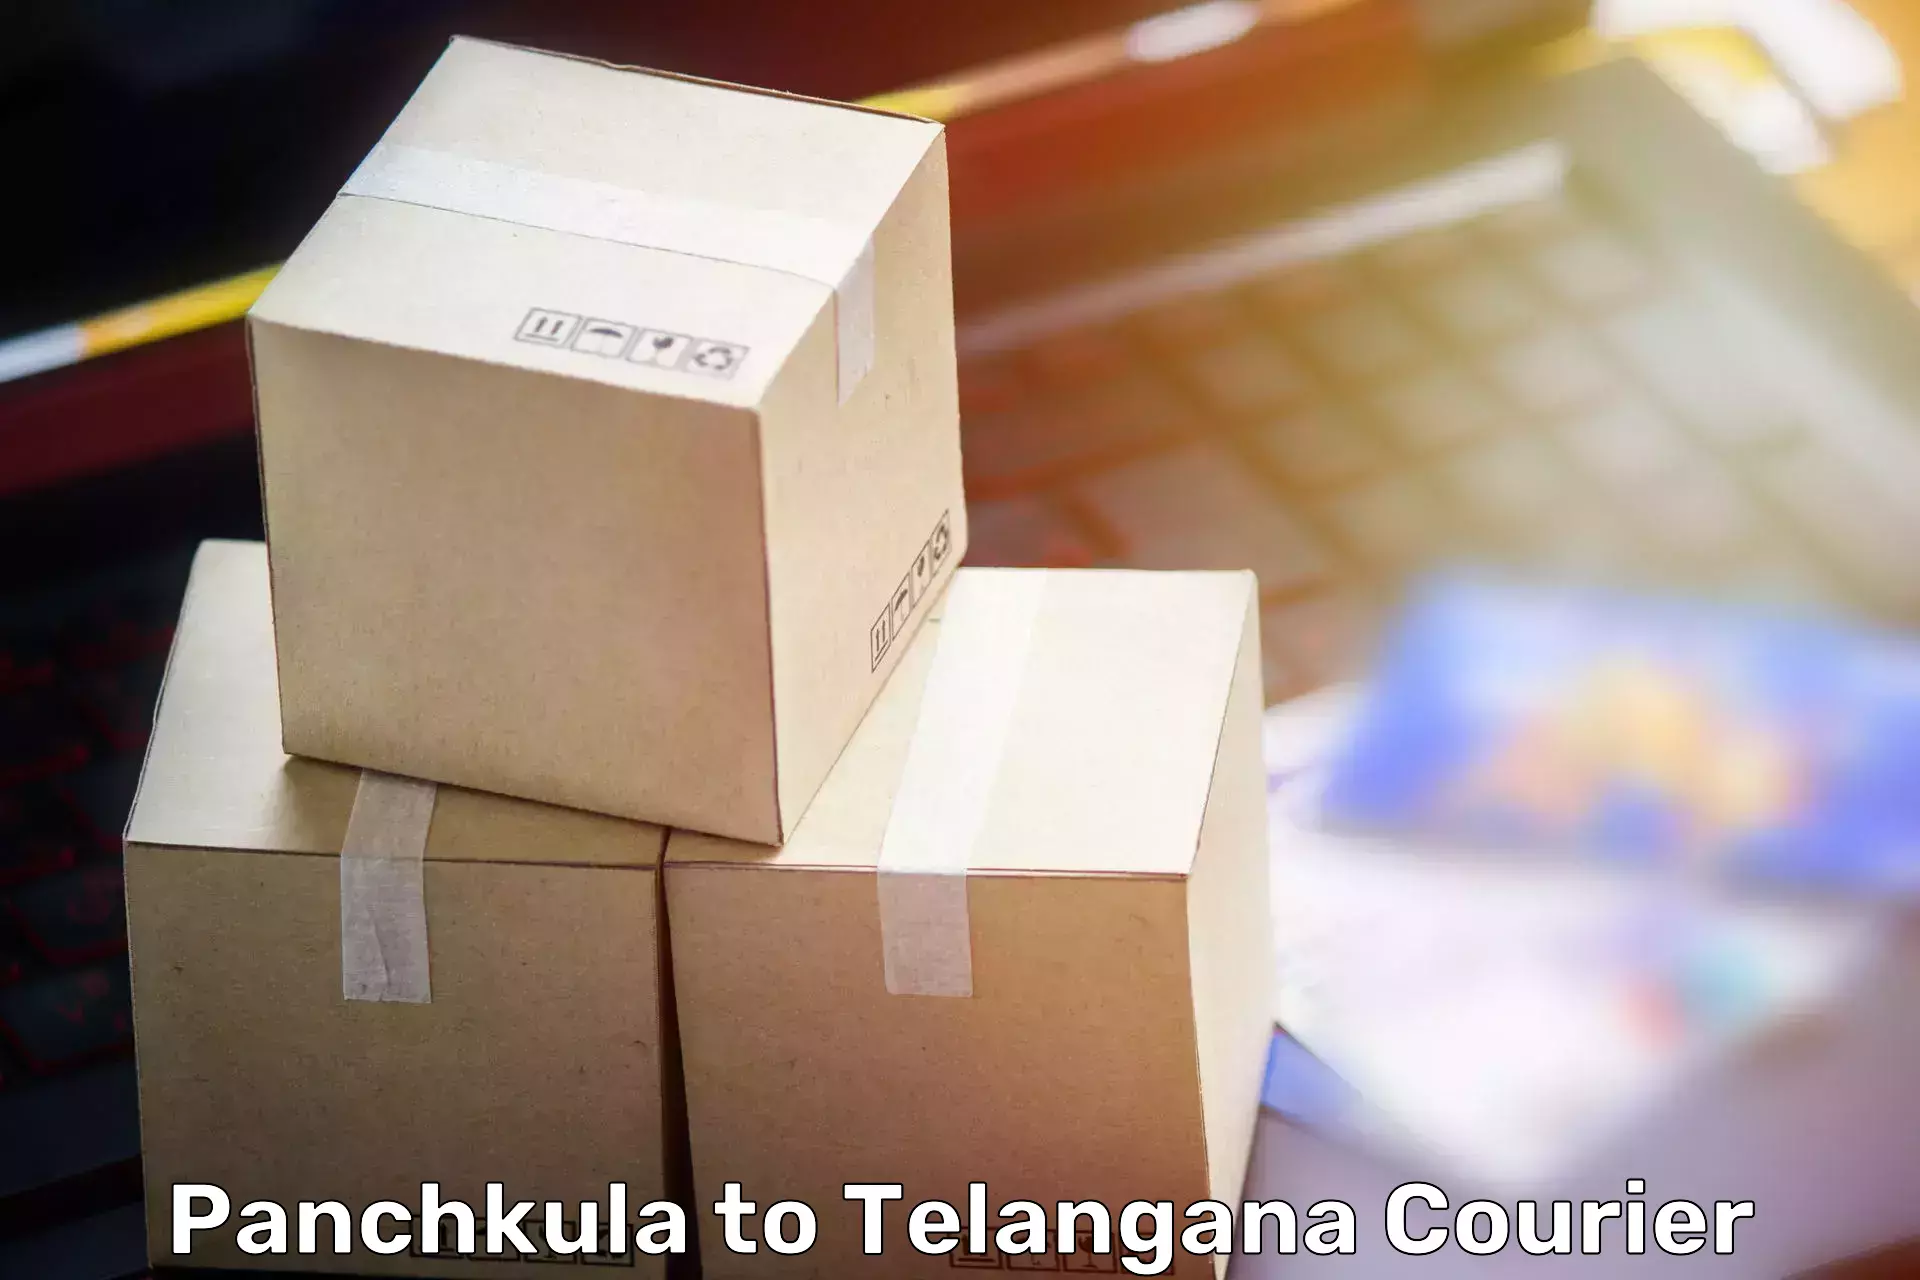 Quality moving company Panchkula to Vemulawada